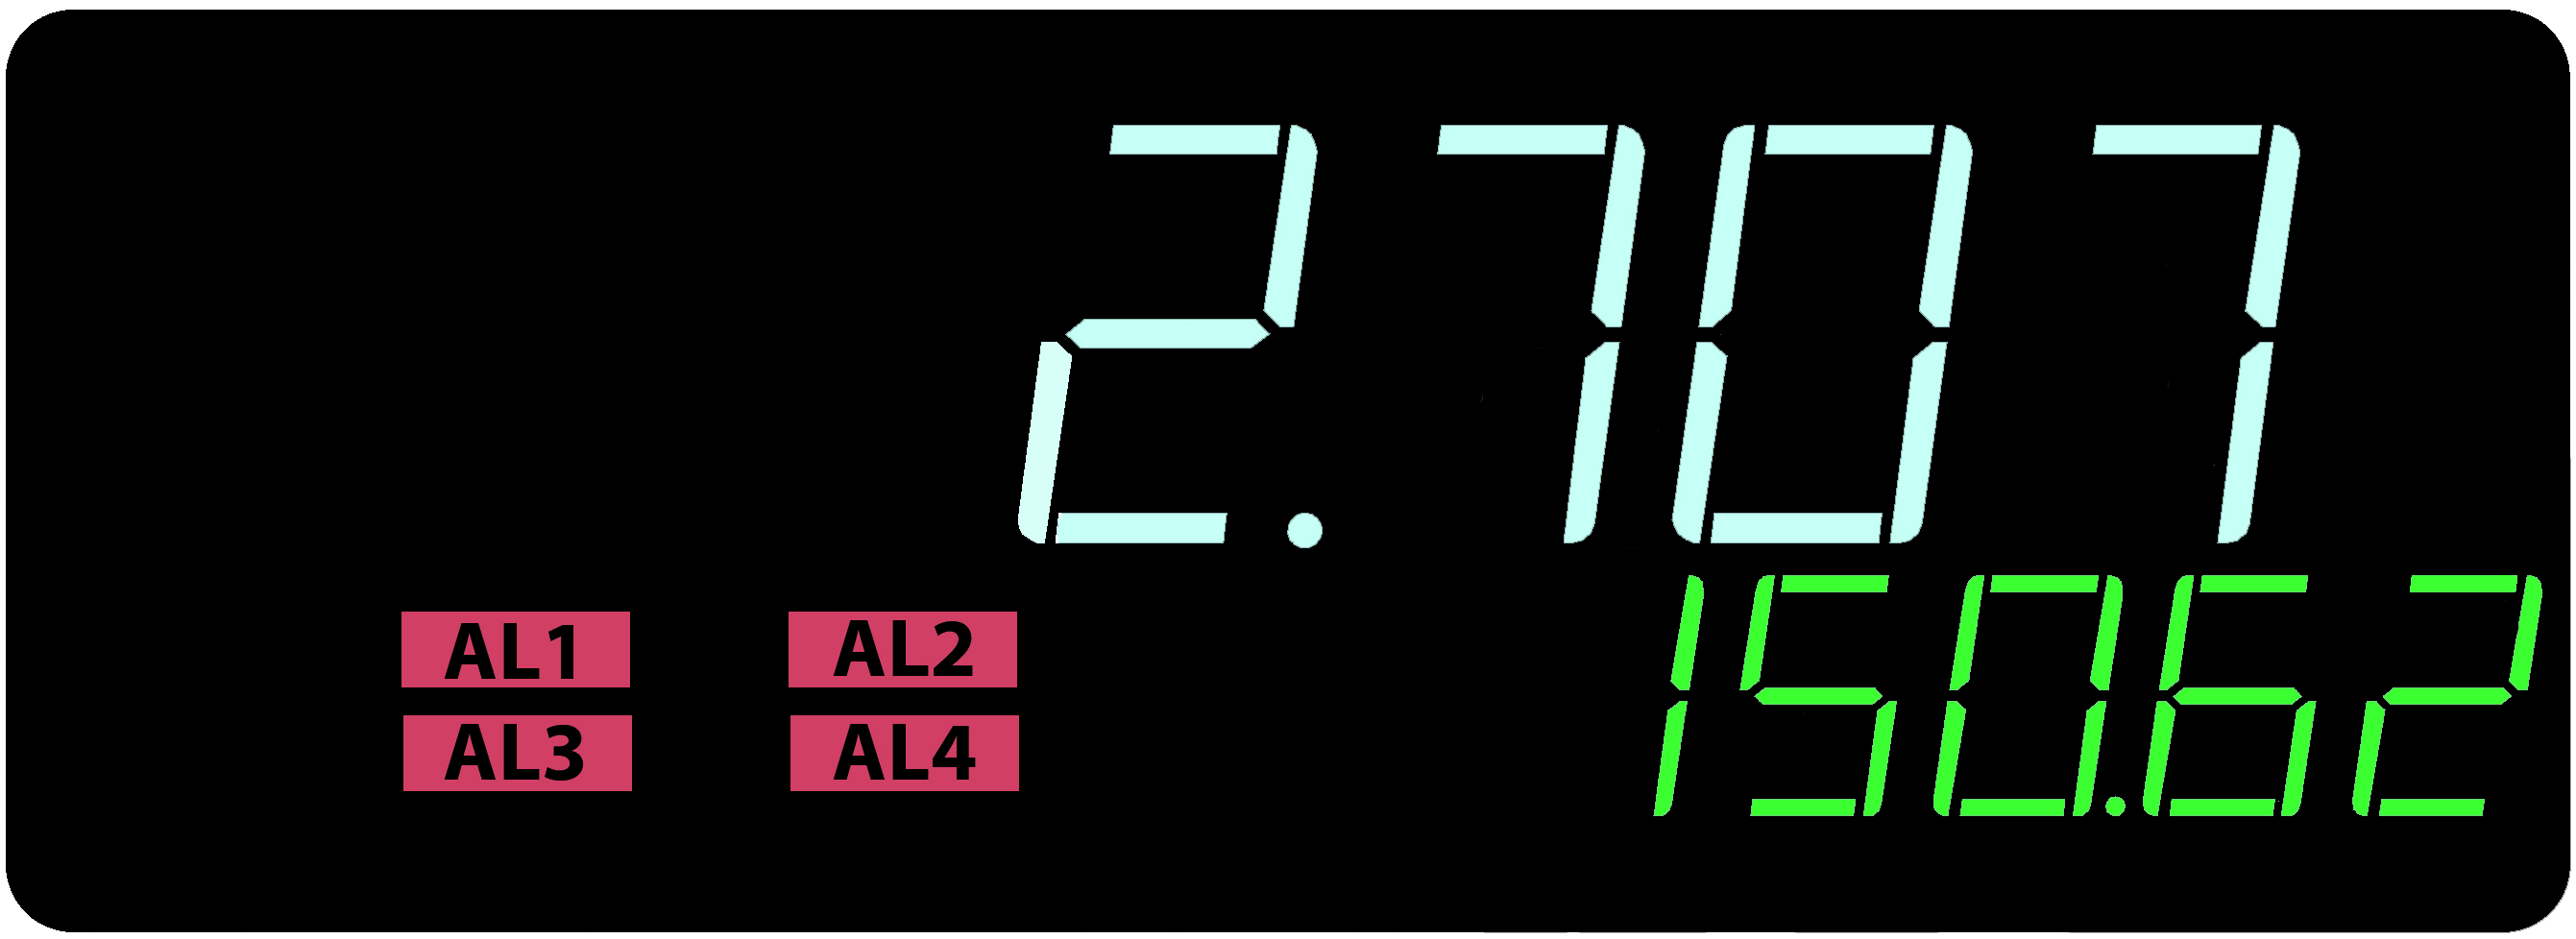 Programmierbares Digital-Messgerät für Impulszahl, Frequenz, Periode - N32O